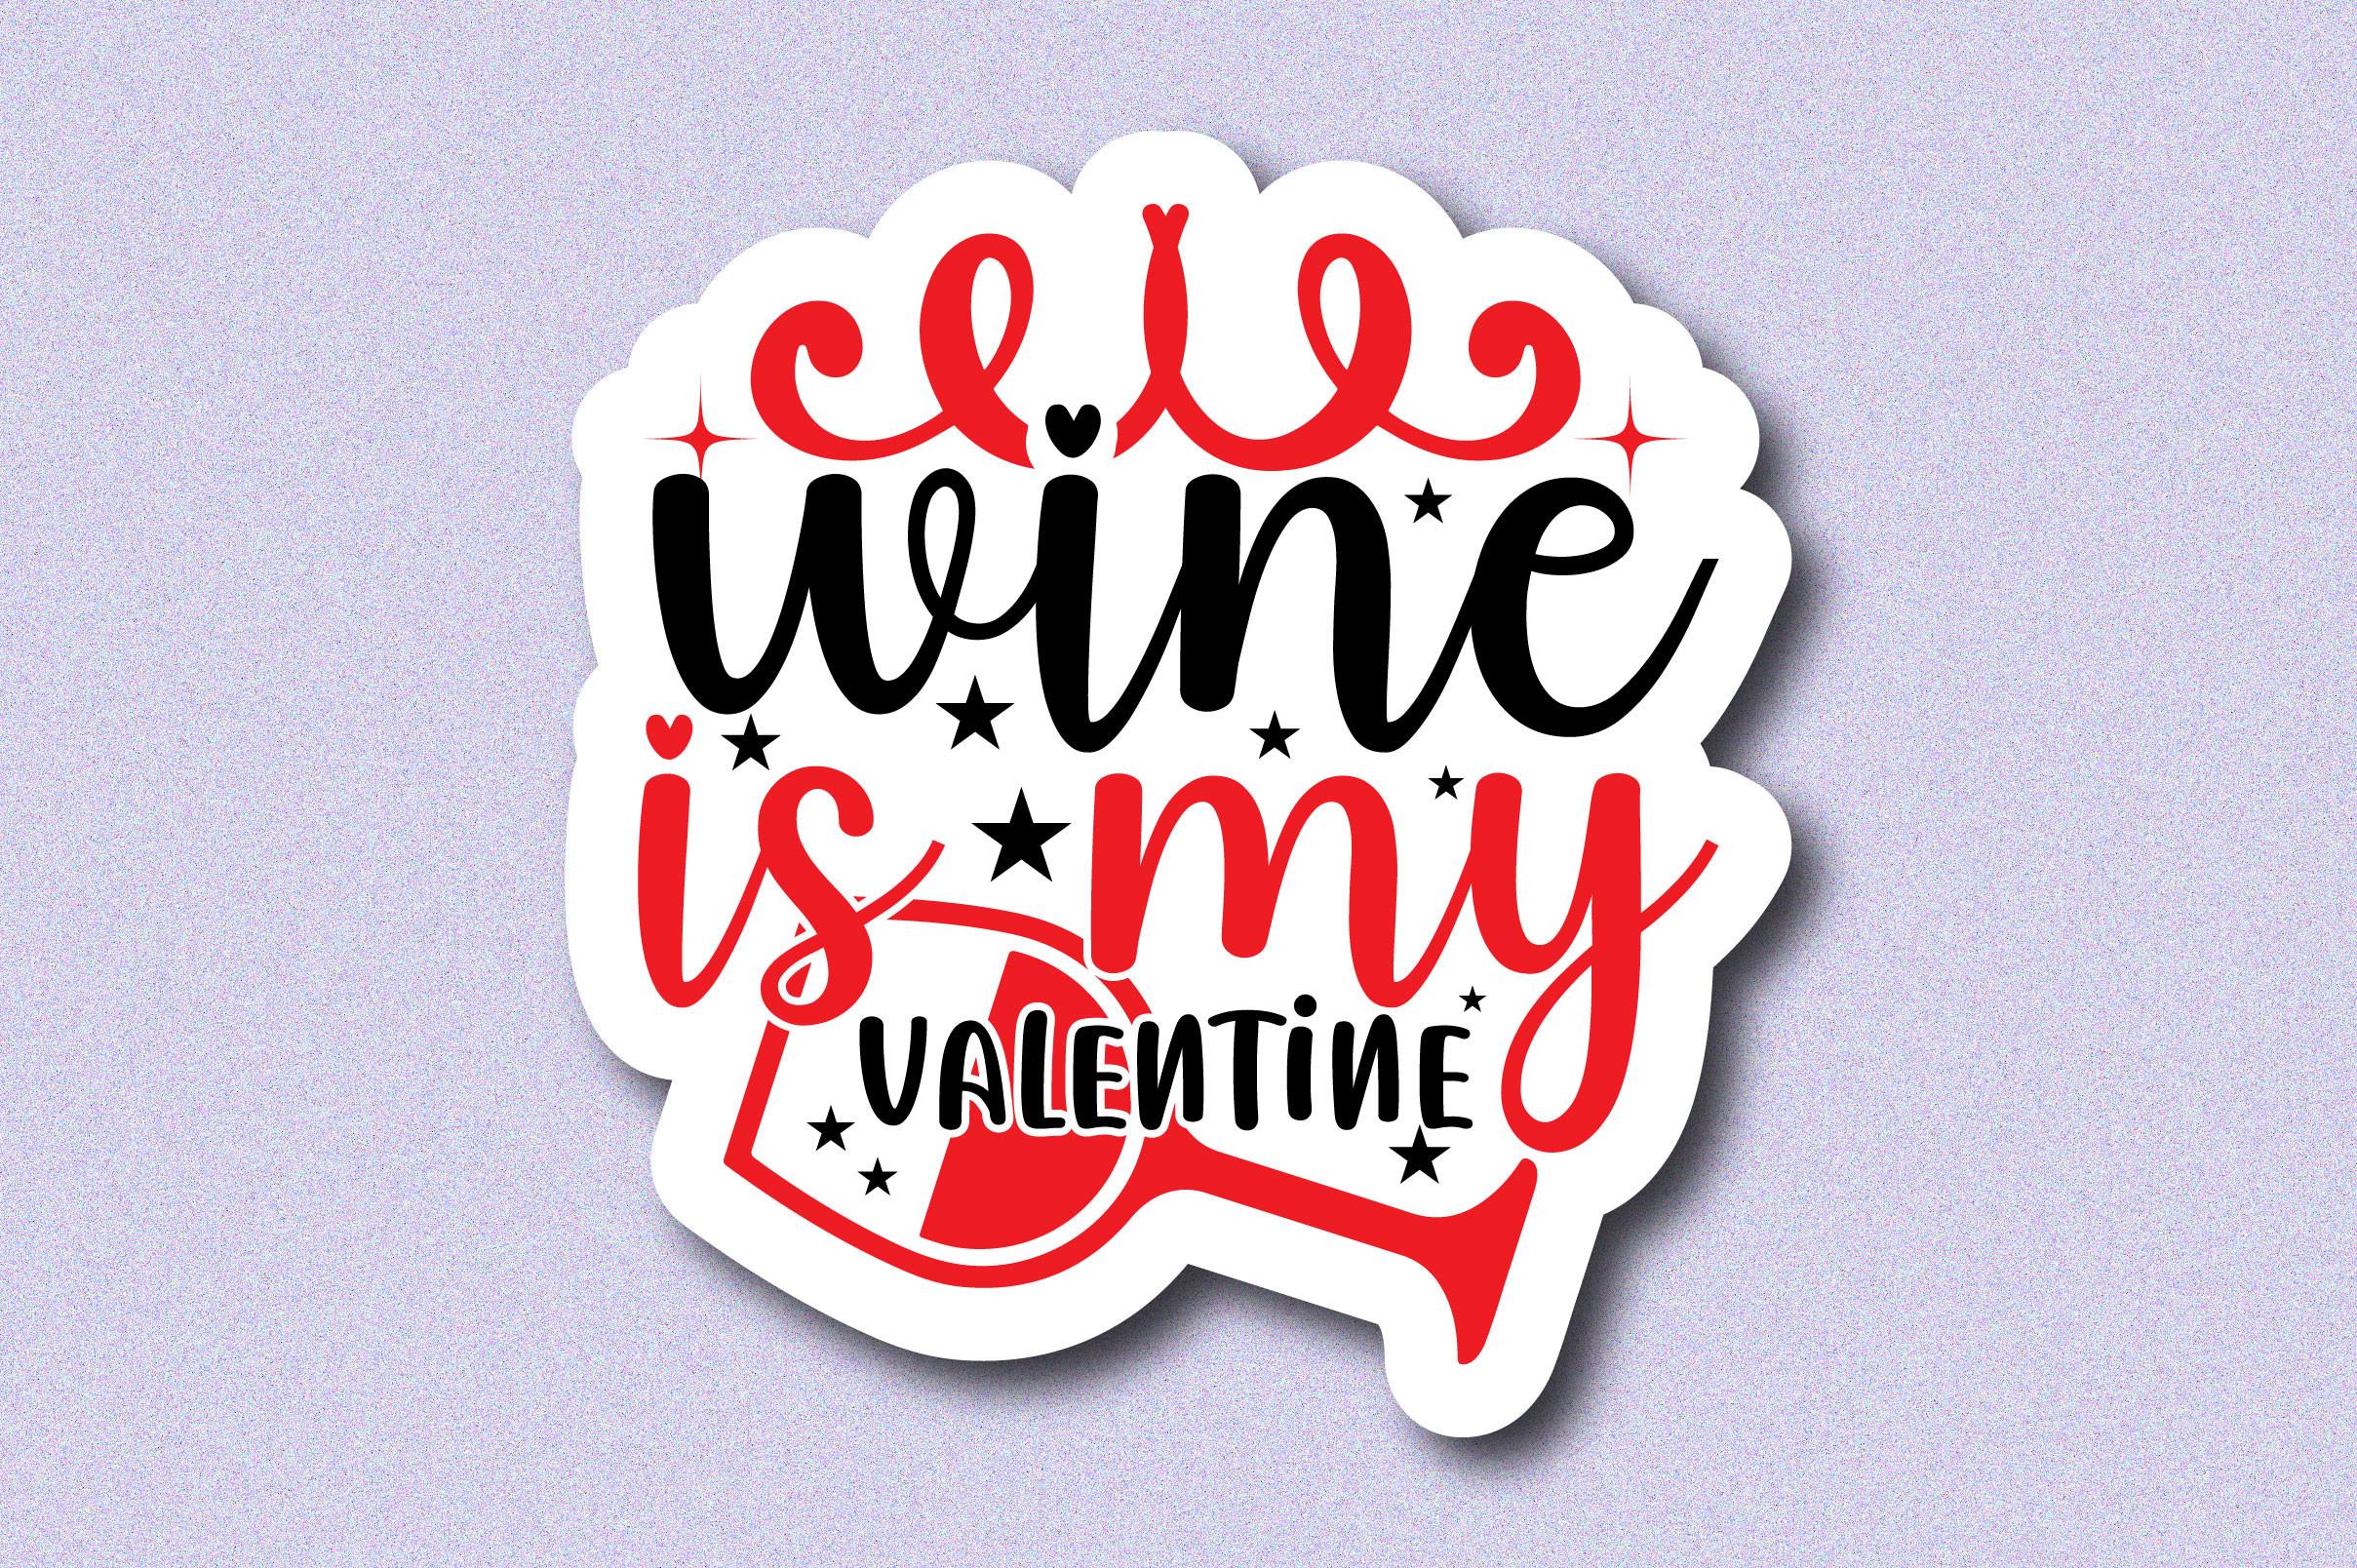 Wine is My Valentine